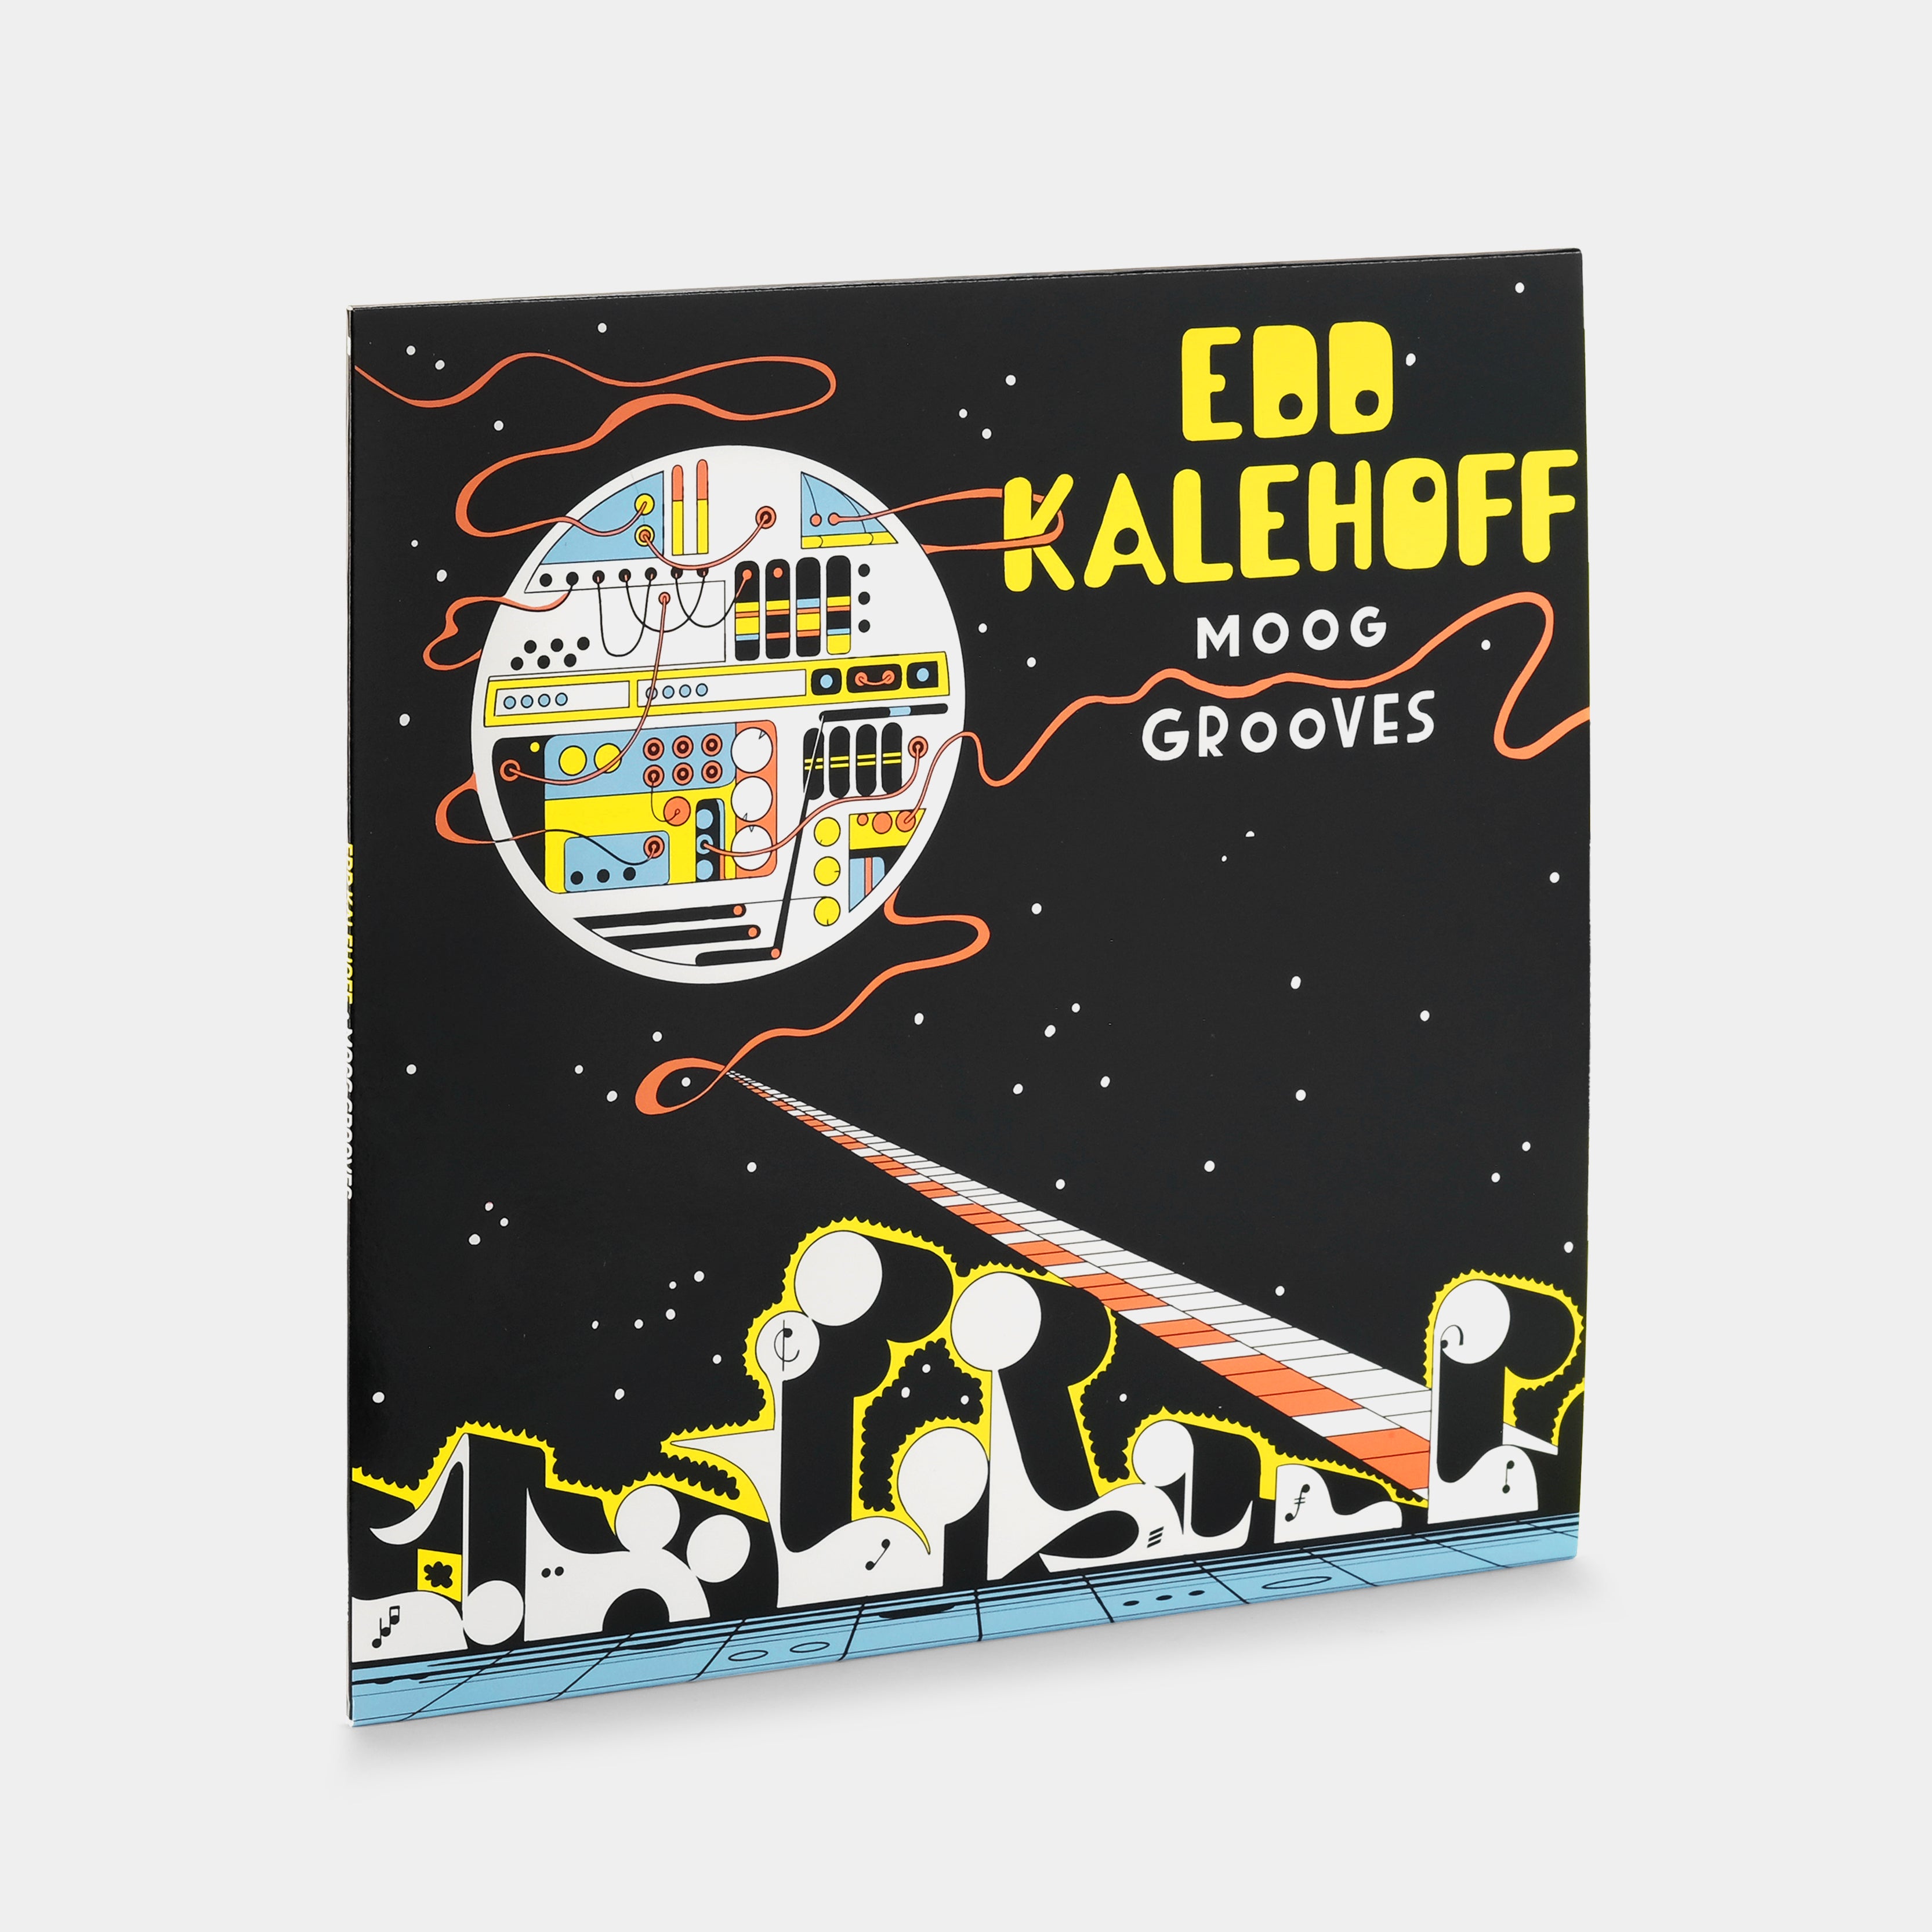 Edd Kalehoff - Moog Grooves LP Yellow Vinyl Record